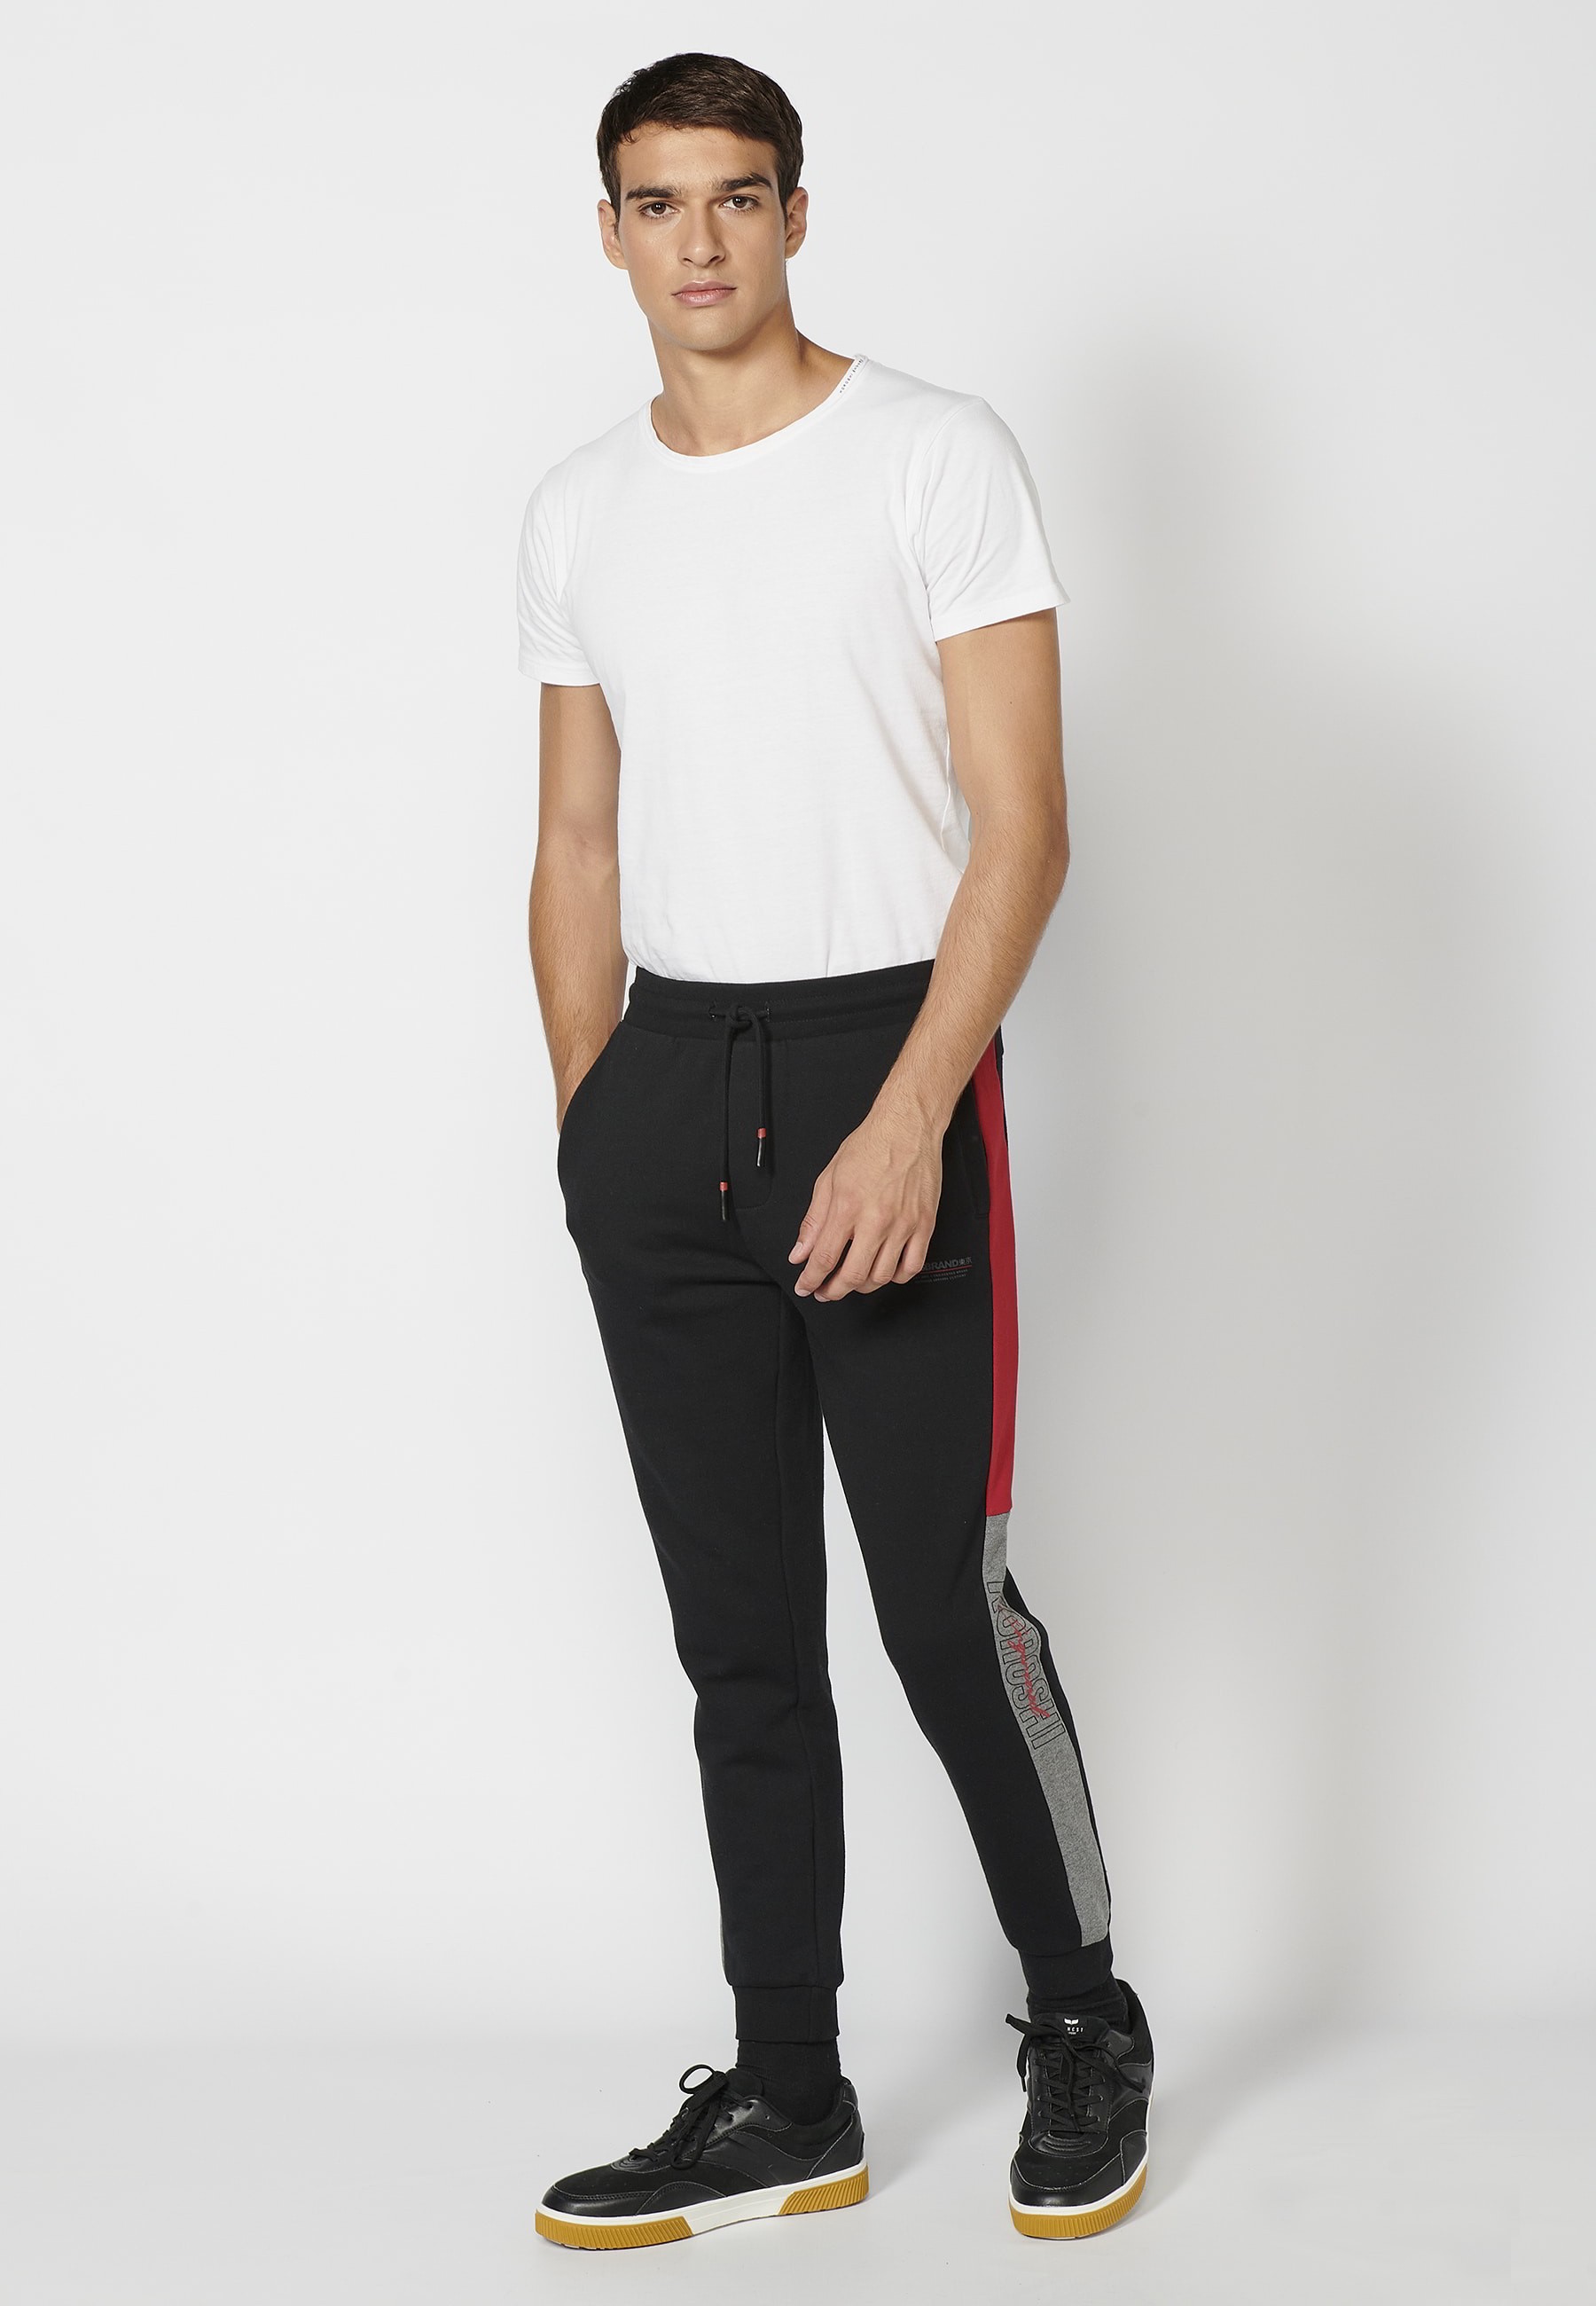 Pantalon de jogging long avec taille élastique réglable, détail latéral, couleur noir pour Homme